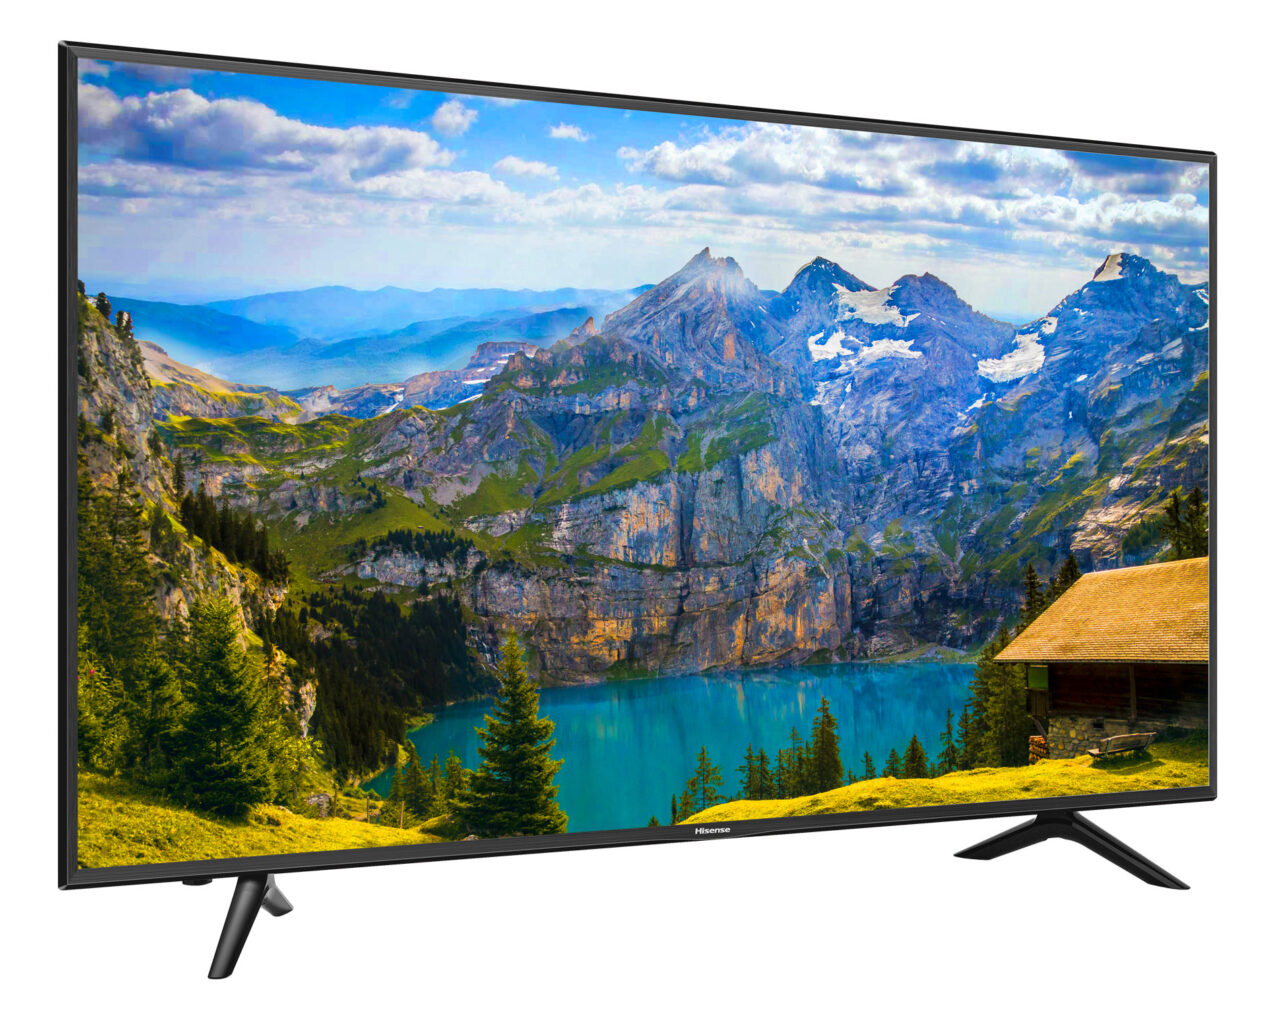 Hisense 65 inch Ultra HD LED Digital Smart TV